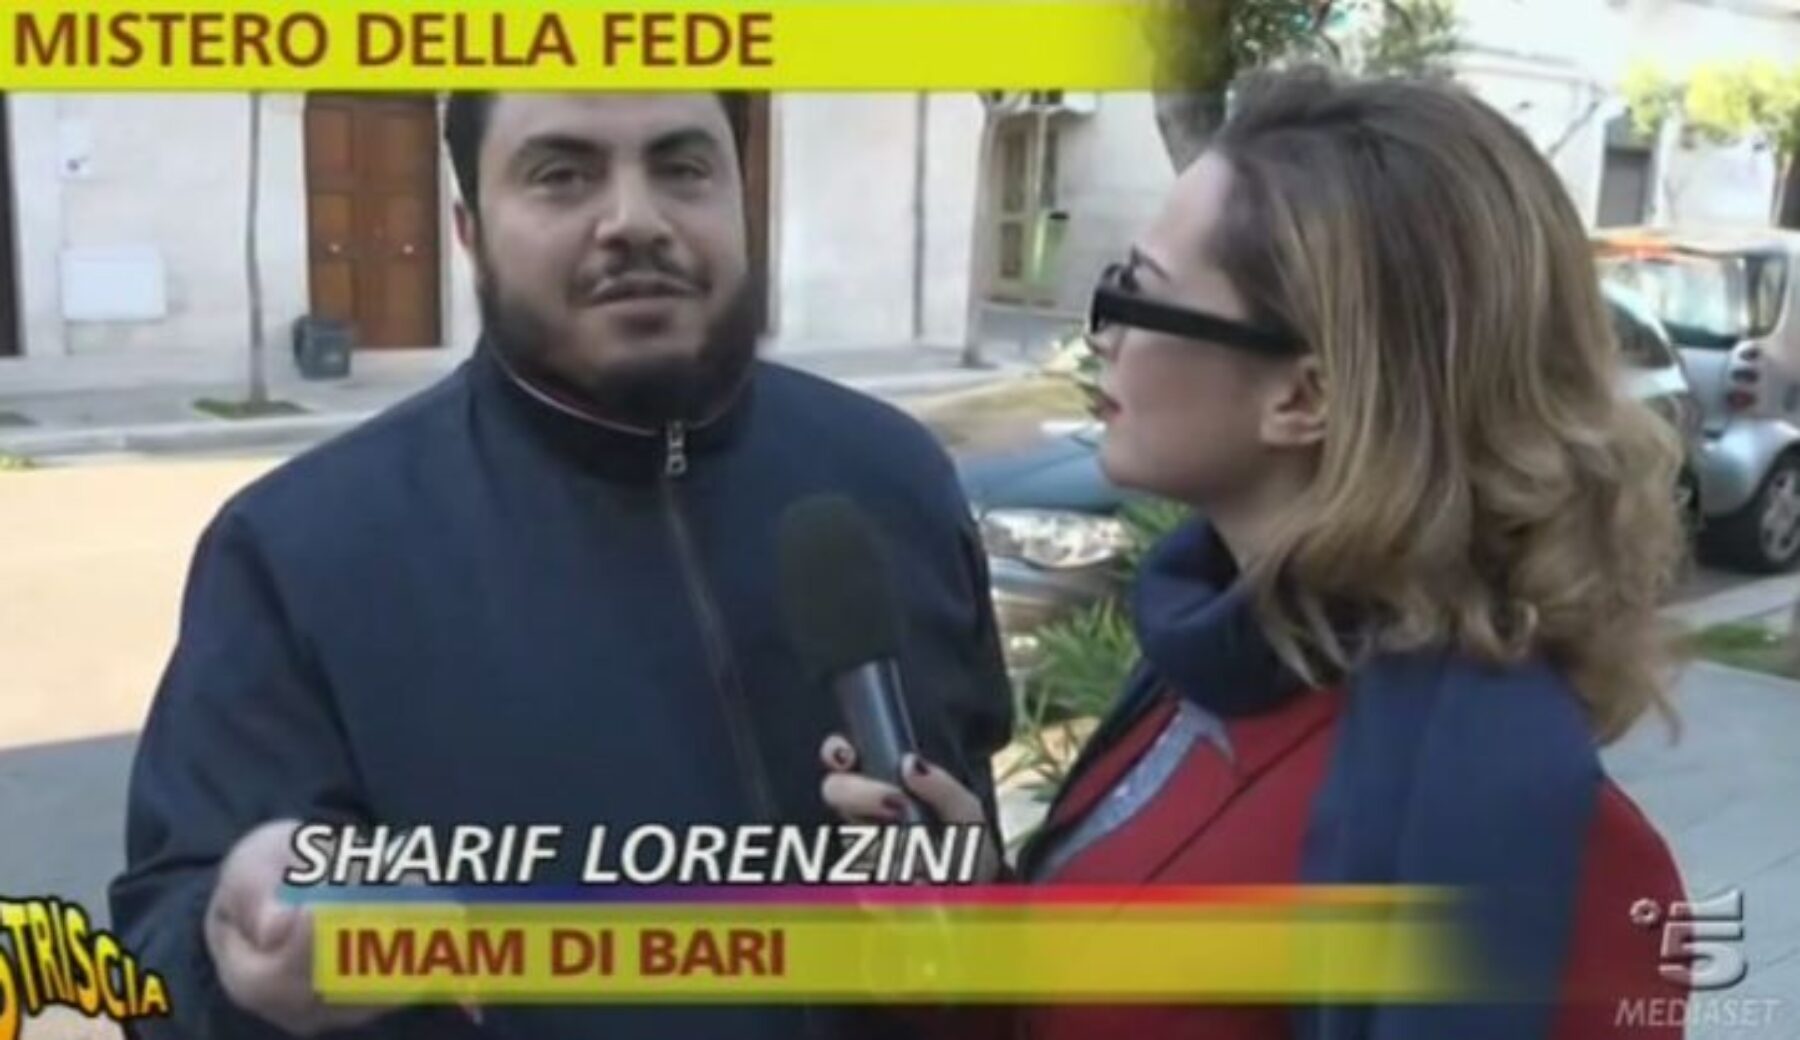 Dopo i servizi di Striscia la notizia ordinanza di interdizione per l’imam di Bari Sharif Lorenzini